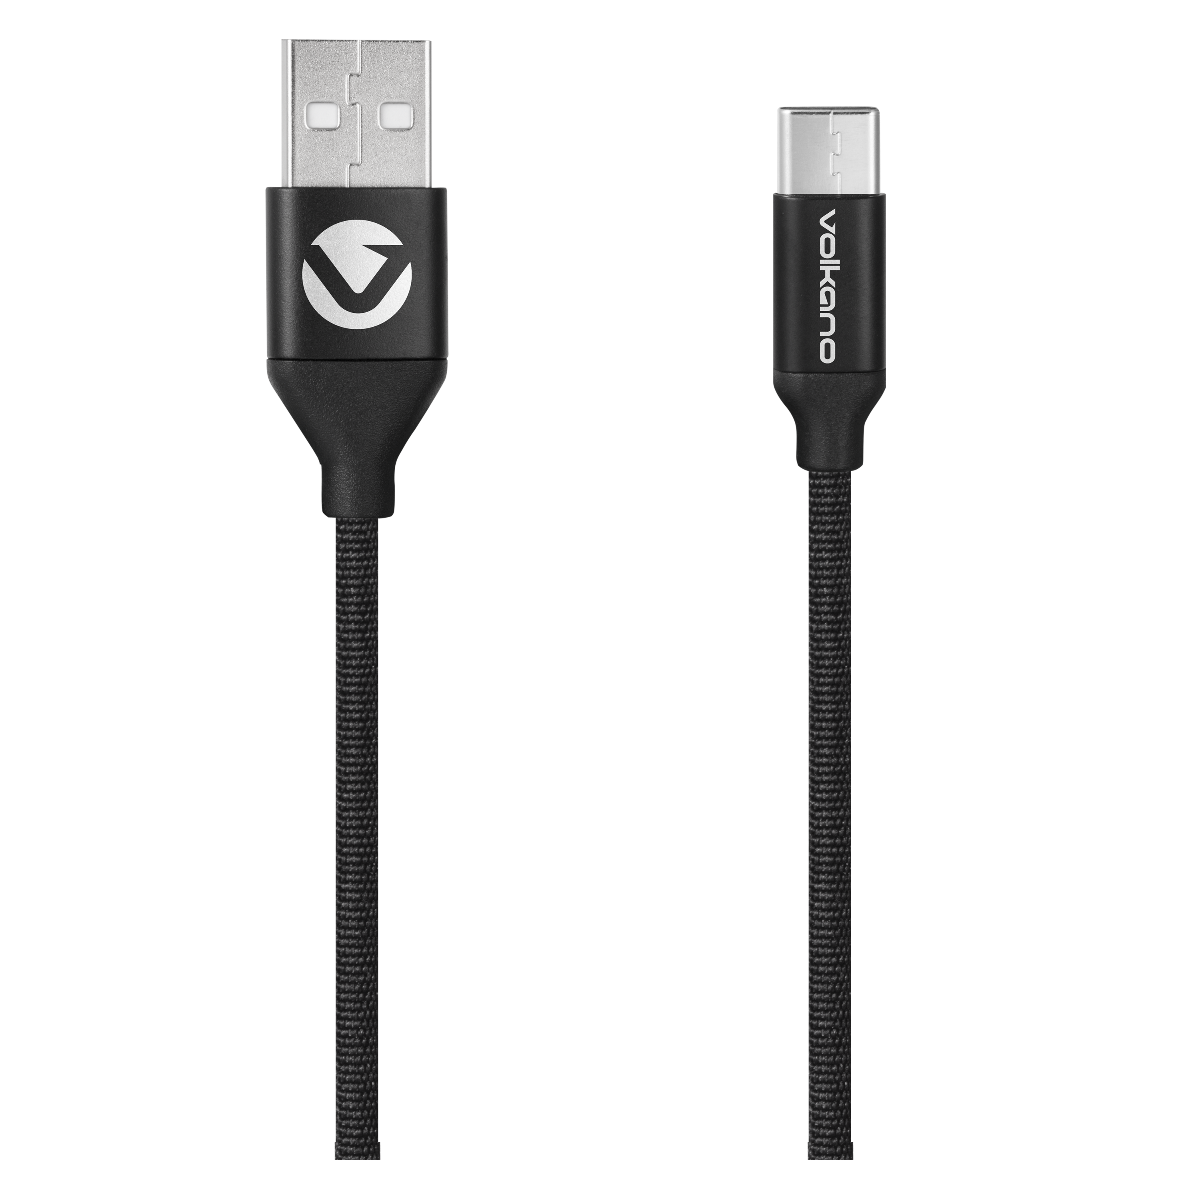 VOLKANO-WEAVE MICRO USB CABLE 3m VK-20146-BK